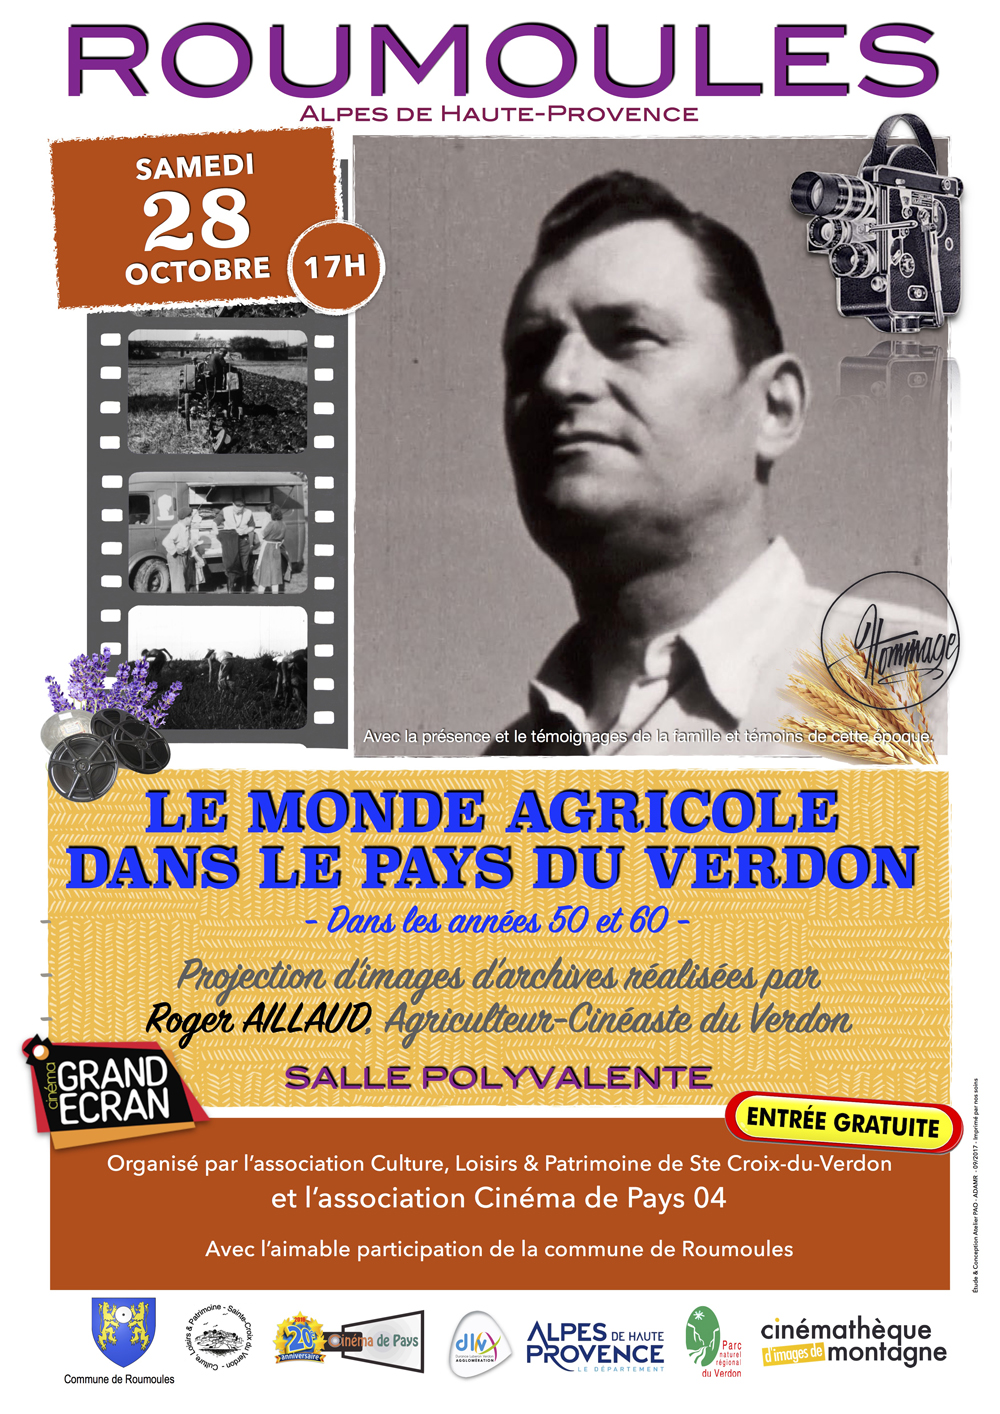 Roumoules rend hommage à Roger Aillaud, agriculteur et cinéaste